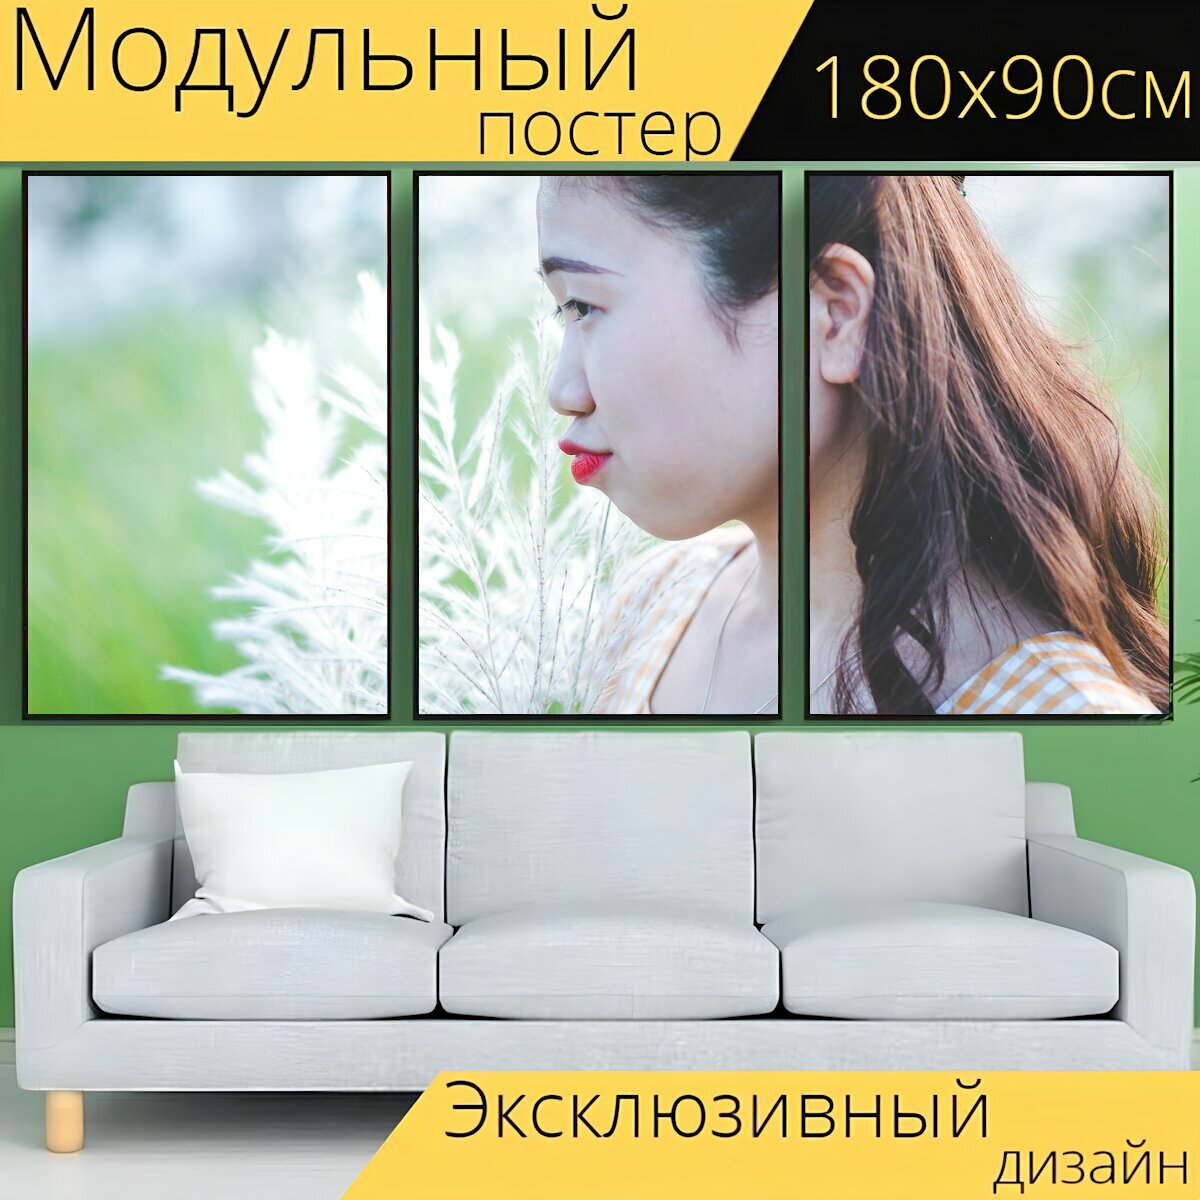 Модульный постер "Девочка, женщина, молодой" 180 x 90 см. для интерьера